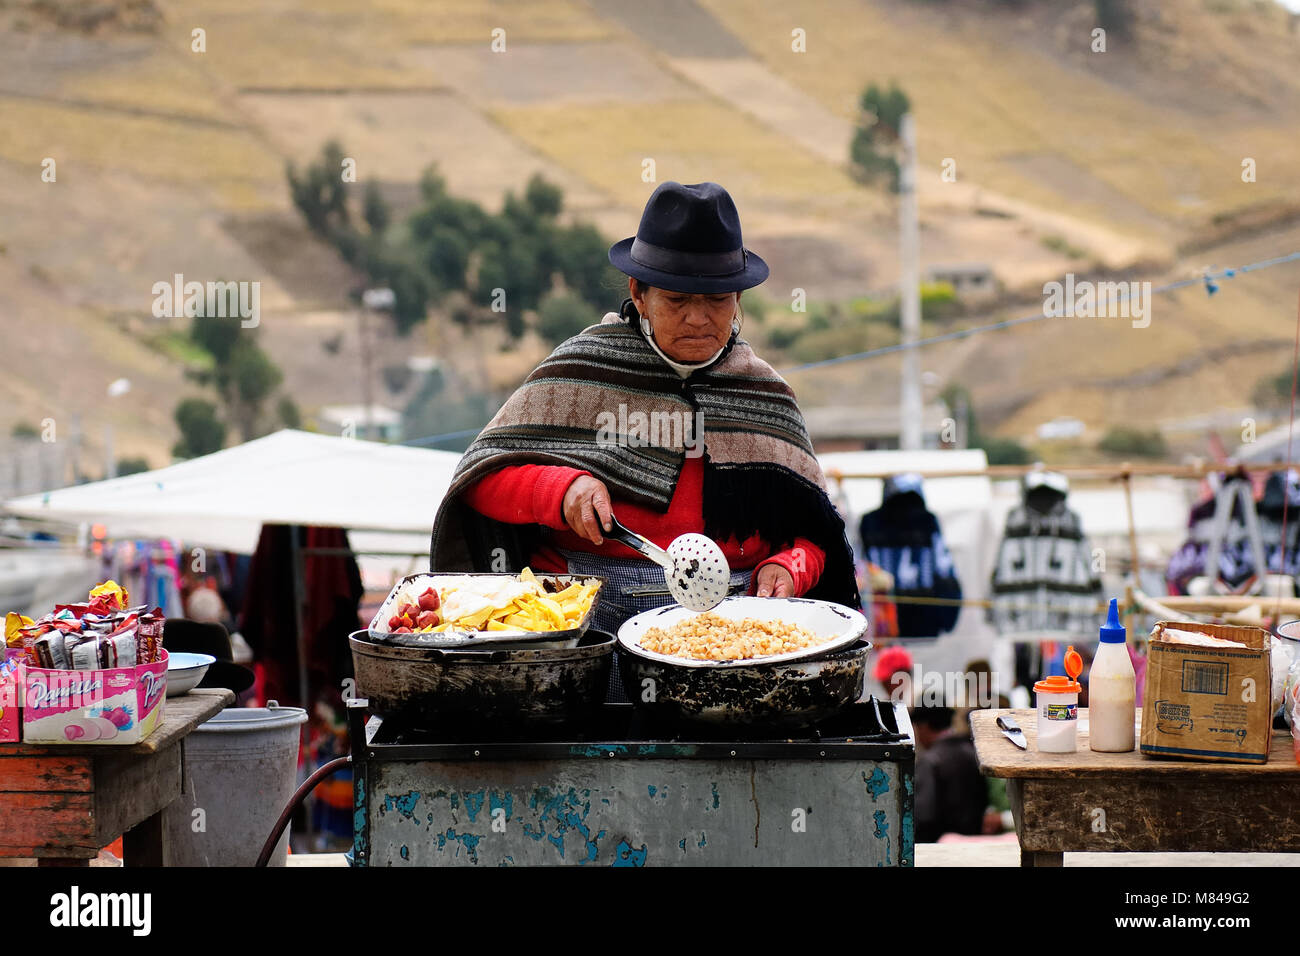 ECUADOR, PUJILI - 11 agosto 2012; ecuadoriana donna etnica in vestiti nazionali di vendita di alimenti altri alimenti su un mercato nel villaggio di Pujili Foto Stock